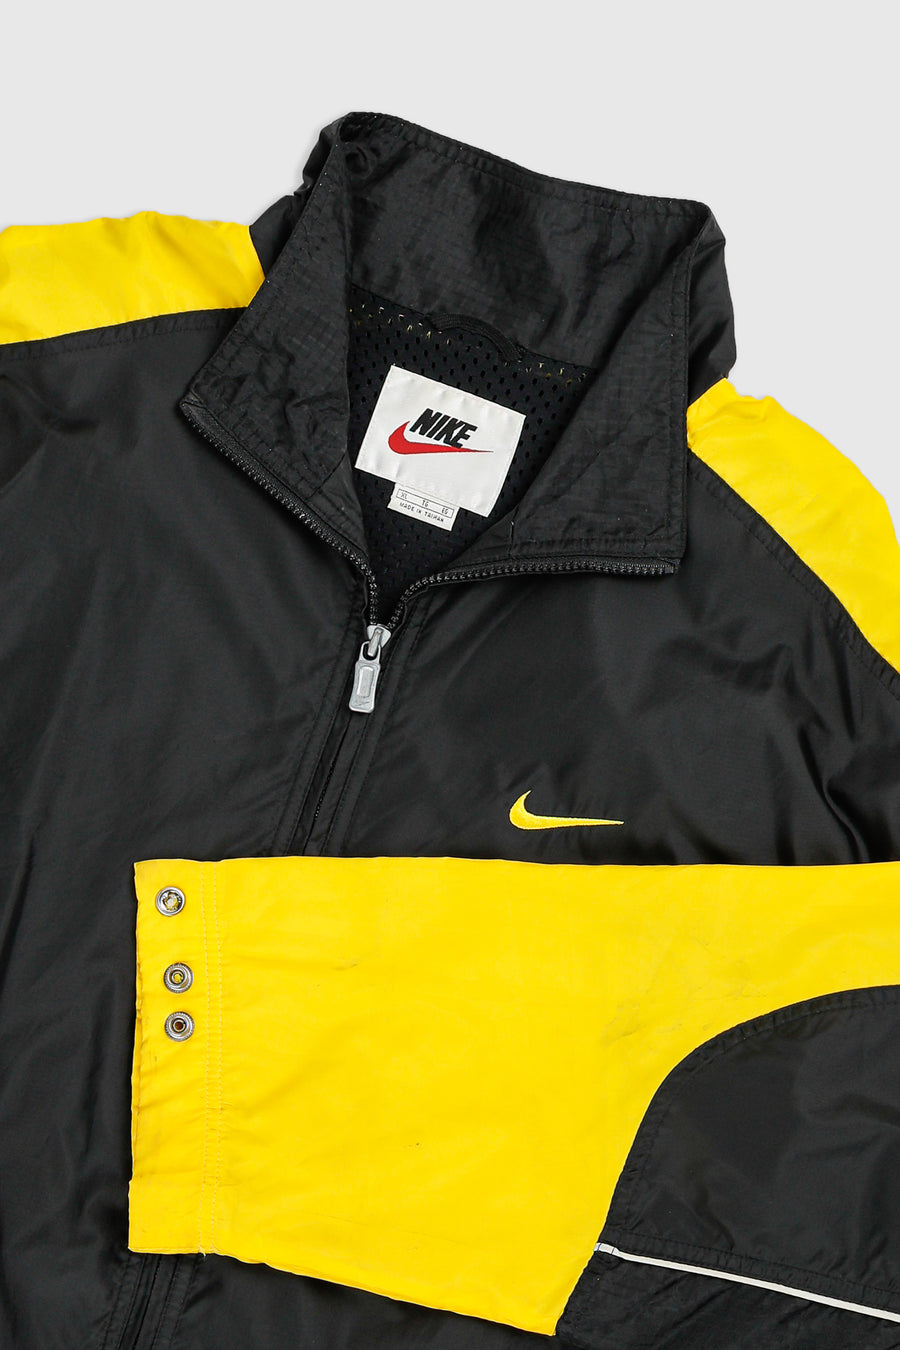 Vintage Nike Windbreaker Jacket - L, XL